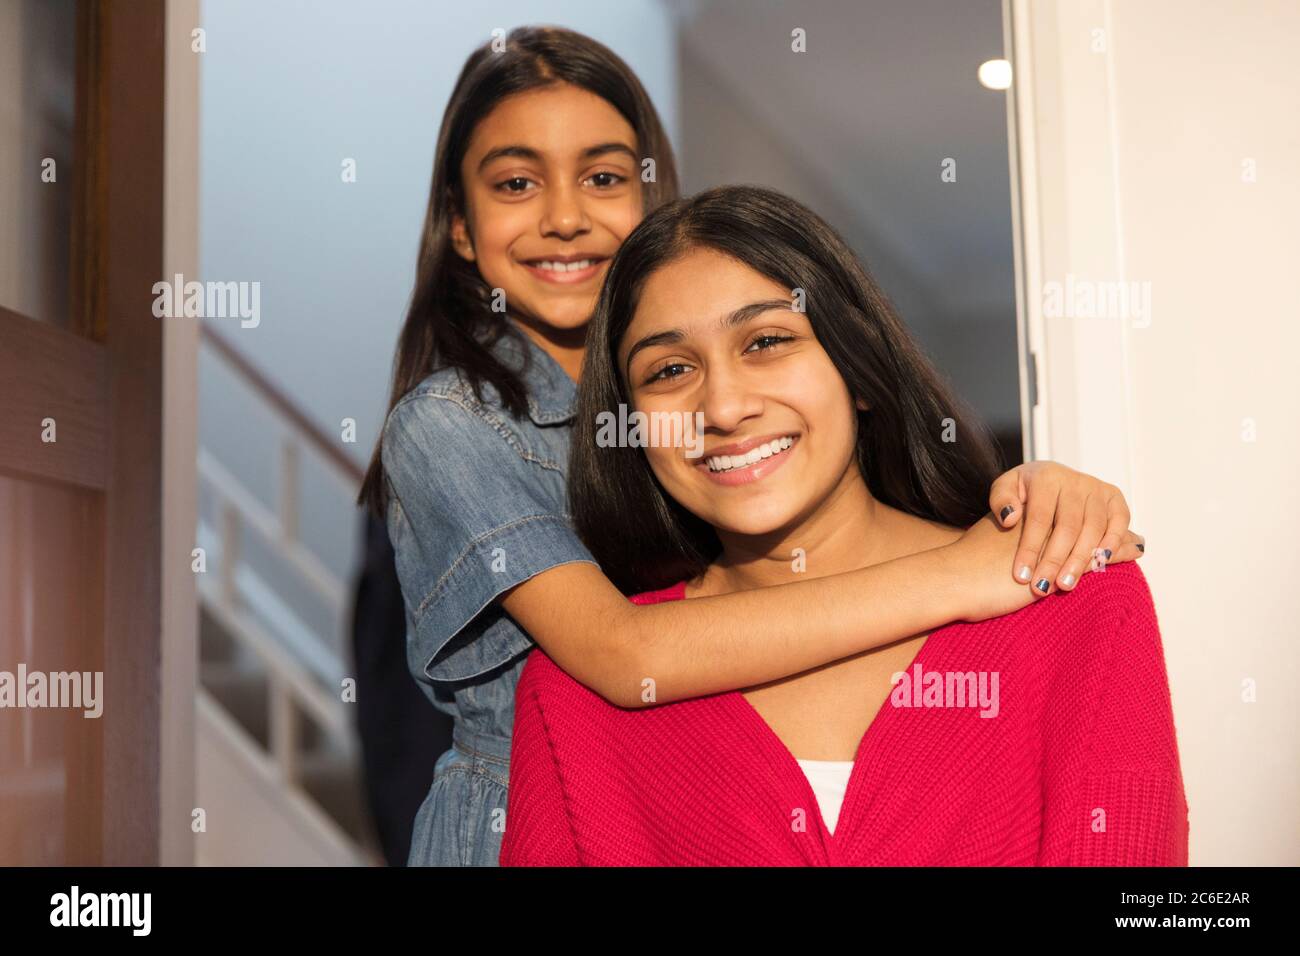 Portrait happy sisters hugging in doorway Stock Photo